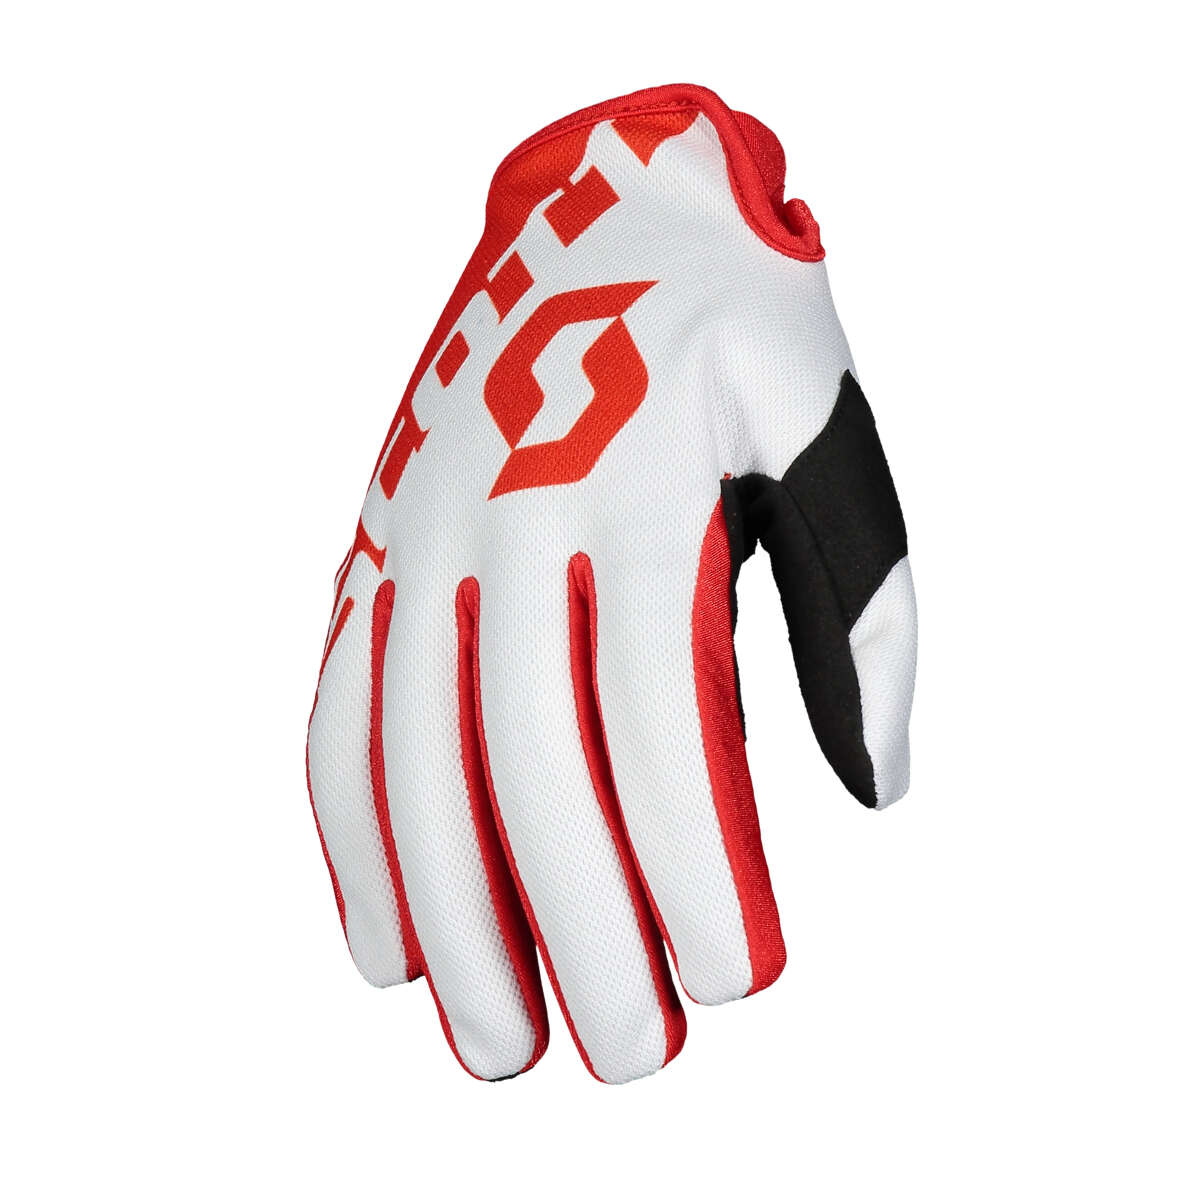 Scott Handschuhe 250 Rot/Weiß